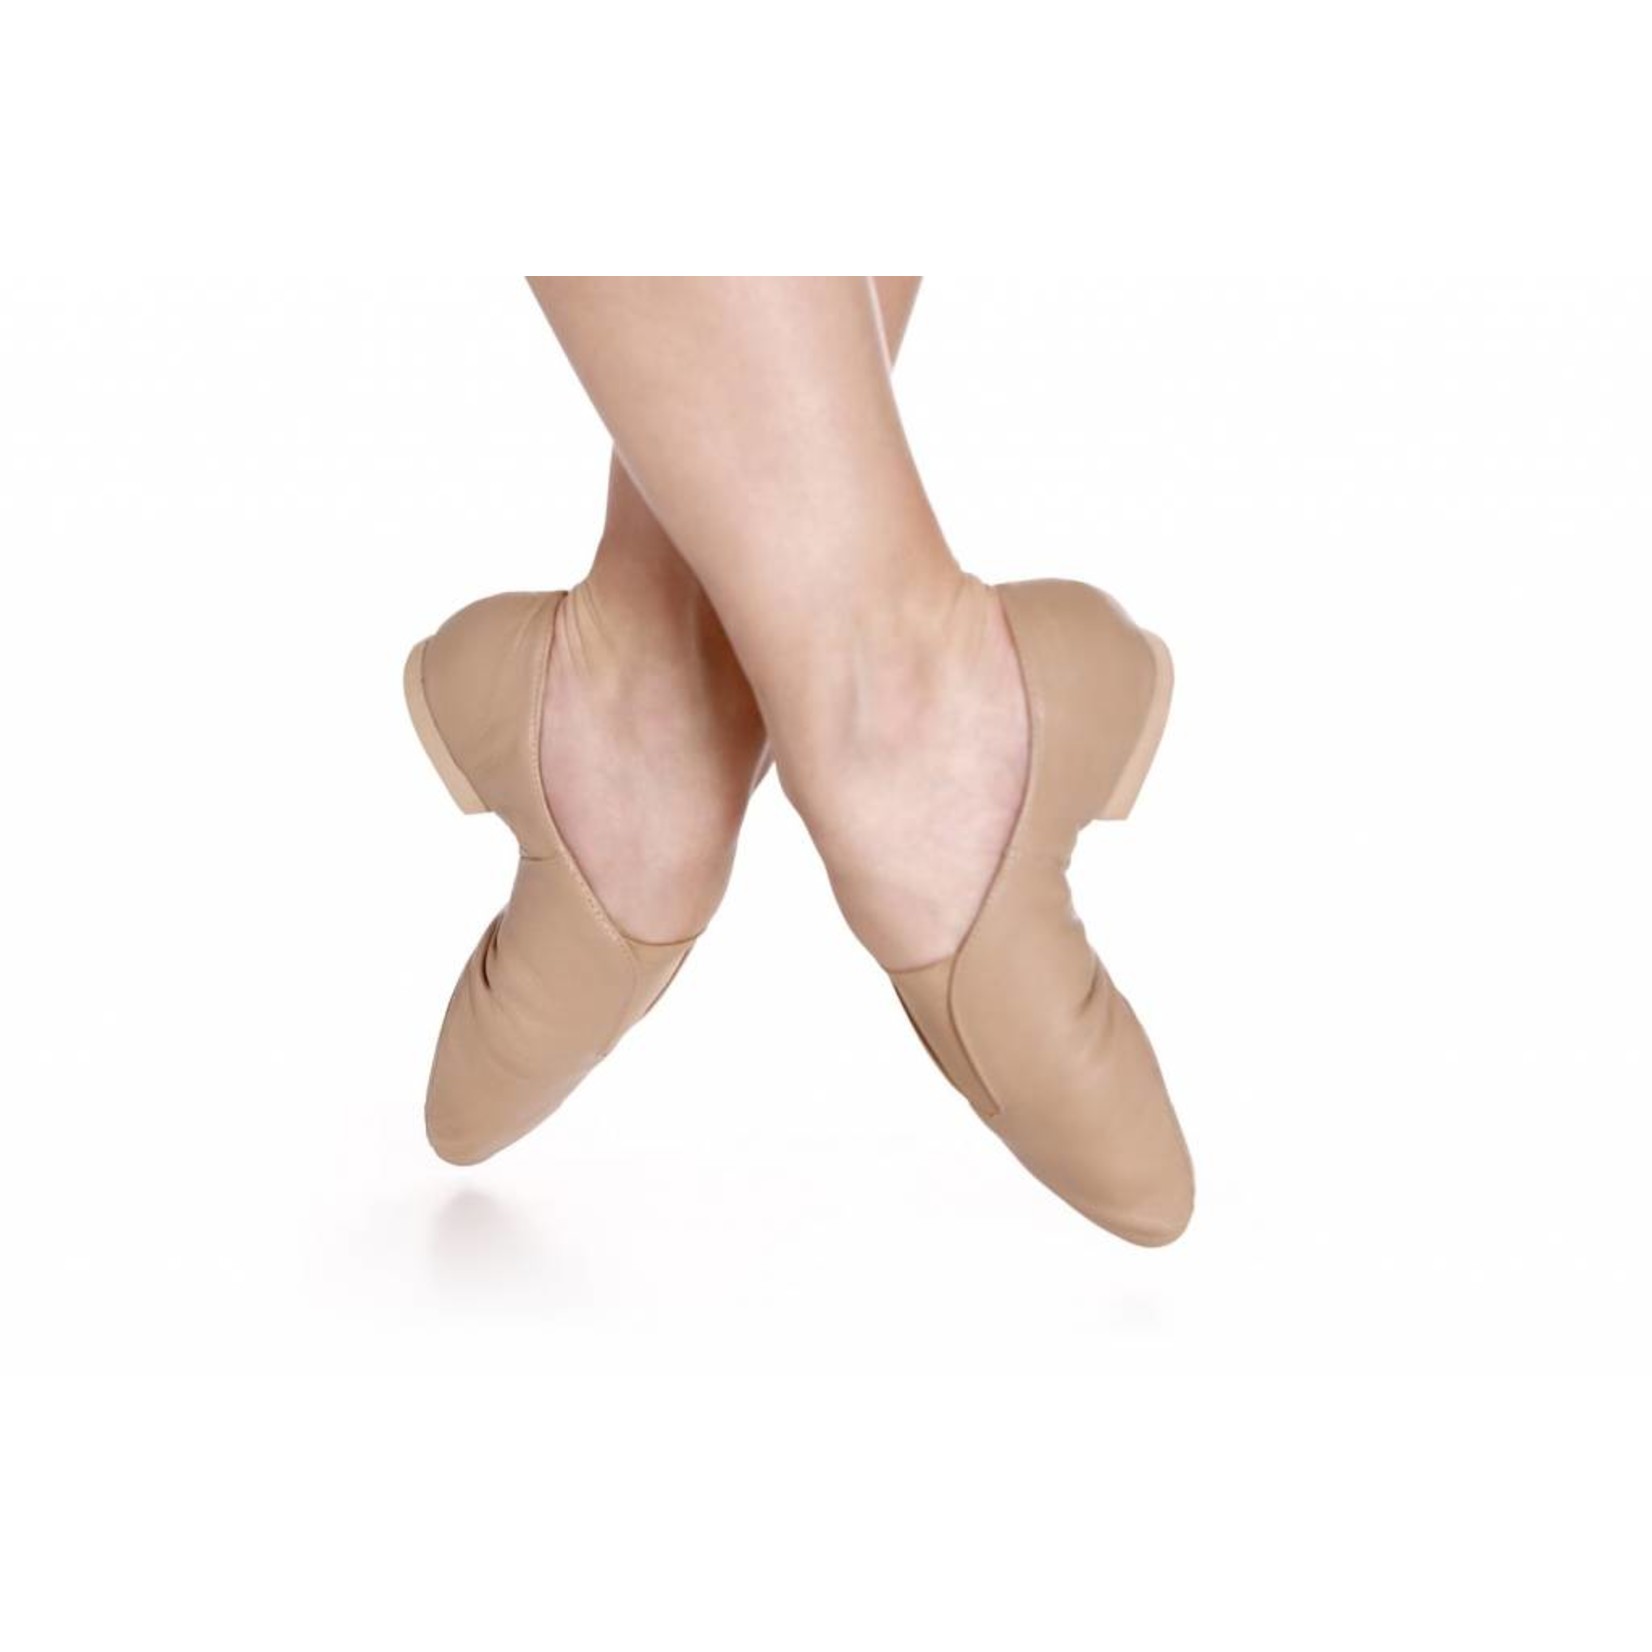 https://cdn.shoplightspeed.com/shops/603788/files/409702/1652x1652x2/so-danca-jz77l-jin-adult-jazz-shoe-split-sole.jpg